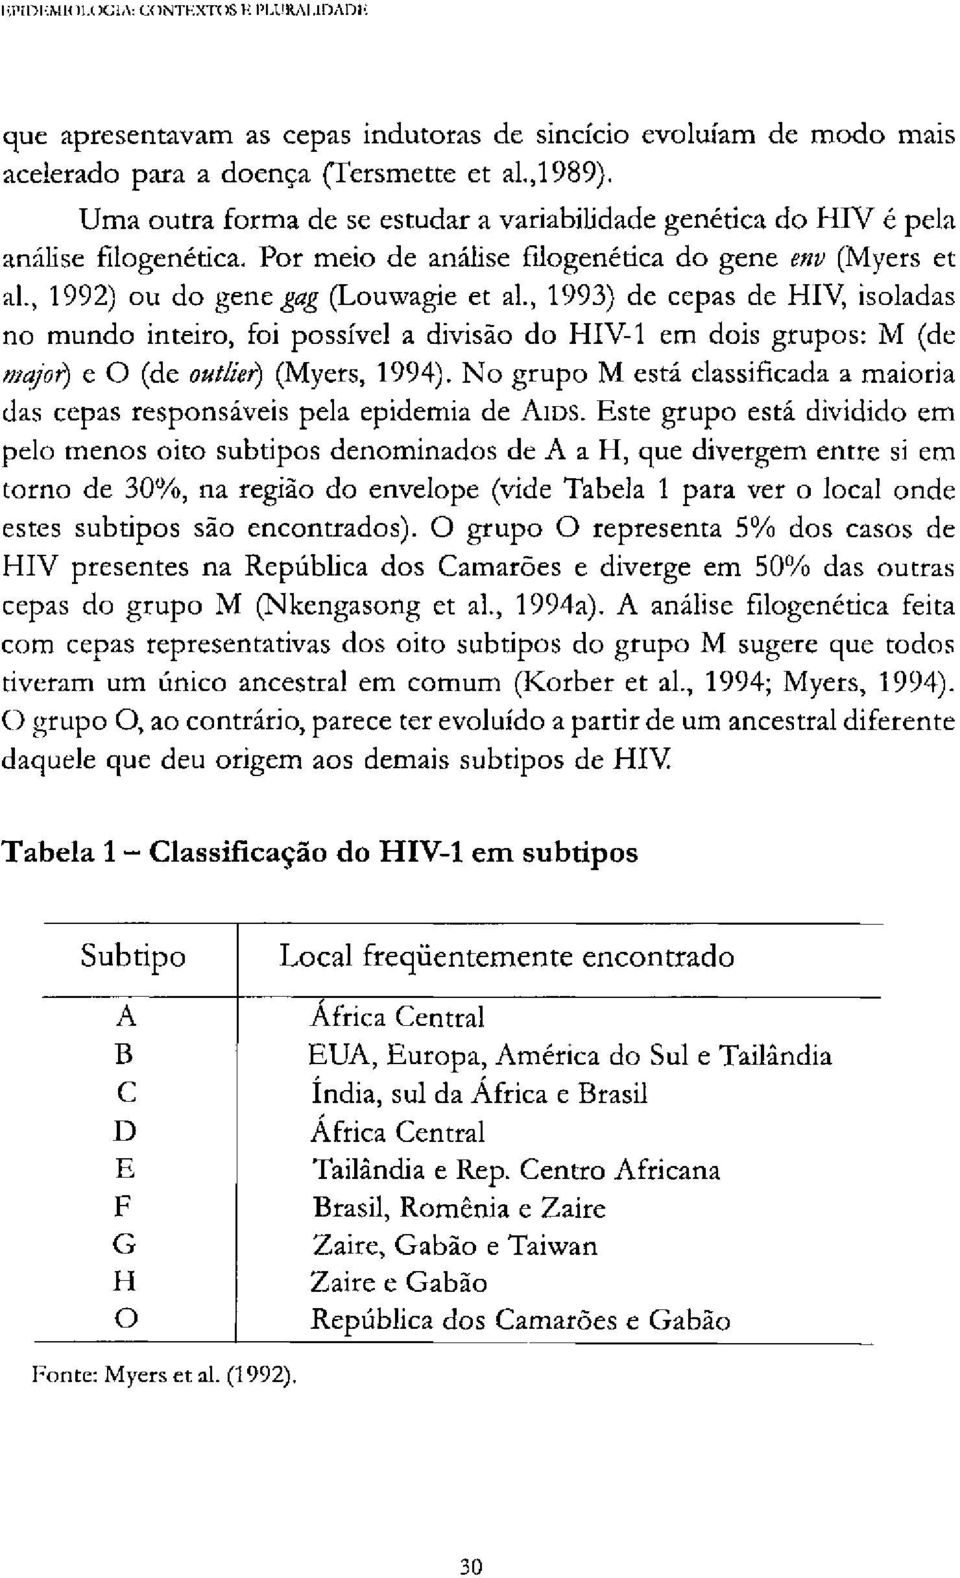 , 1993) de cepas de HIV, isoladas no mundo inteiro, foi possível a divisão do HIV-1 em dois grupos: Μ (de major) e O (de outlier) (Myers, 1994).